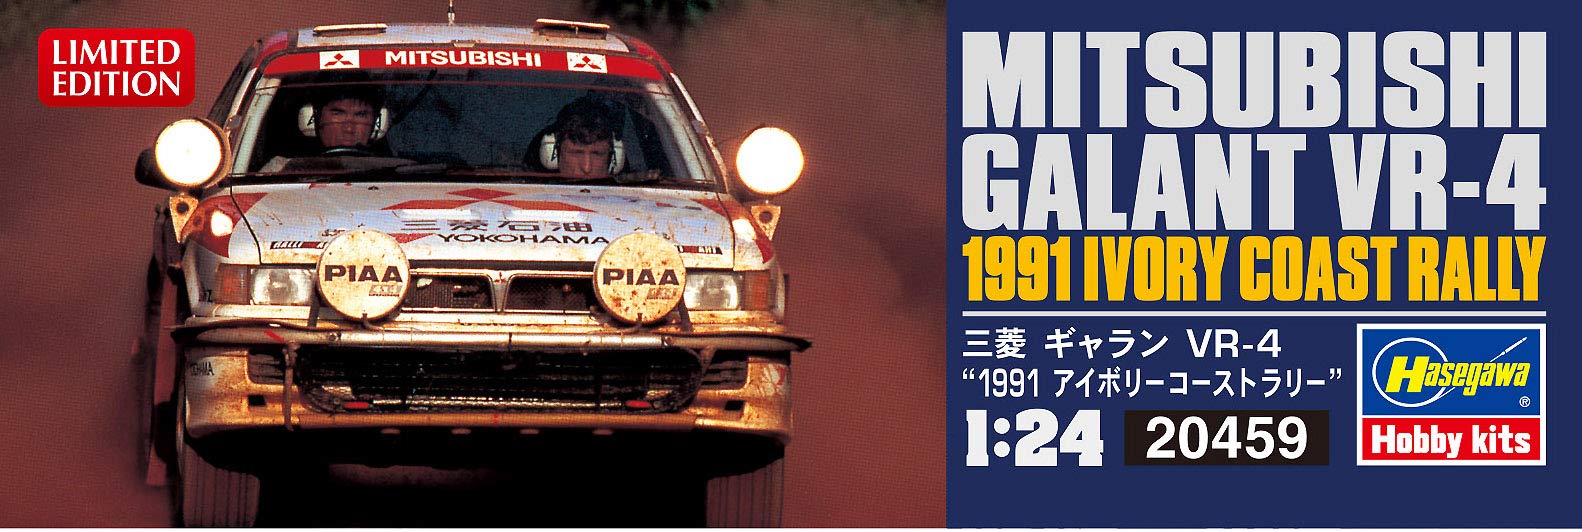 Hasegawa 1/24 Mitsubishi Galant Vr-4 1991 Elfenbeinküste Rallye Plastikmodell 20459